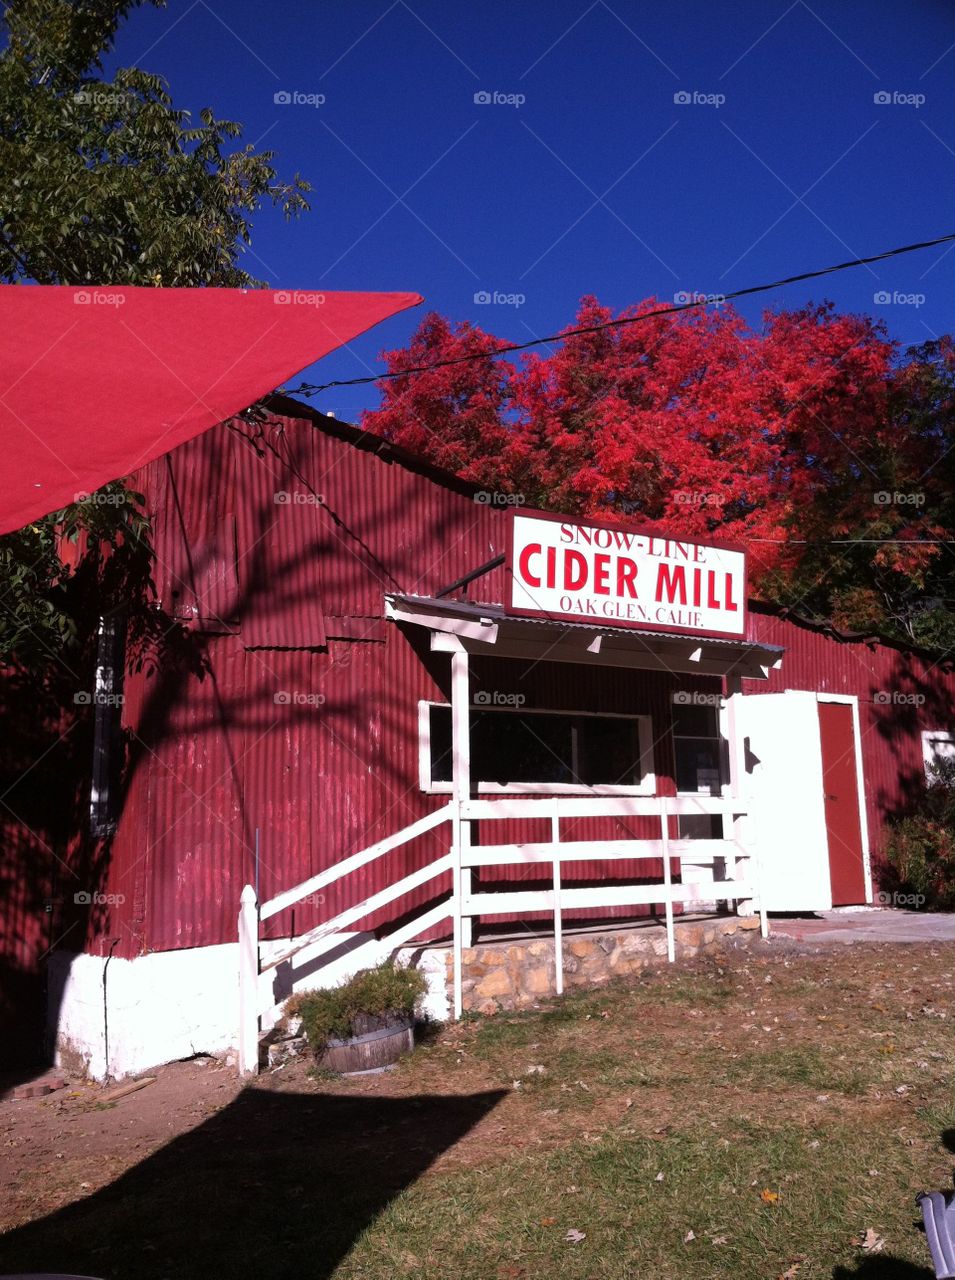 Cider mill 